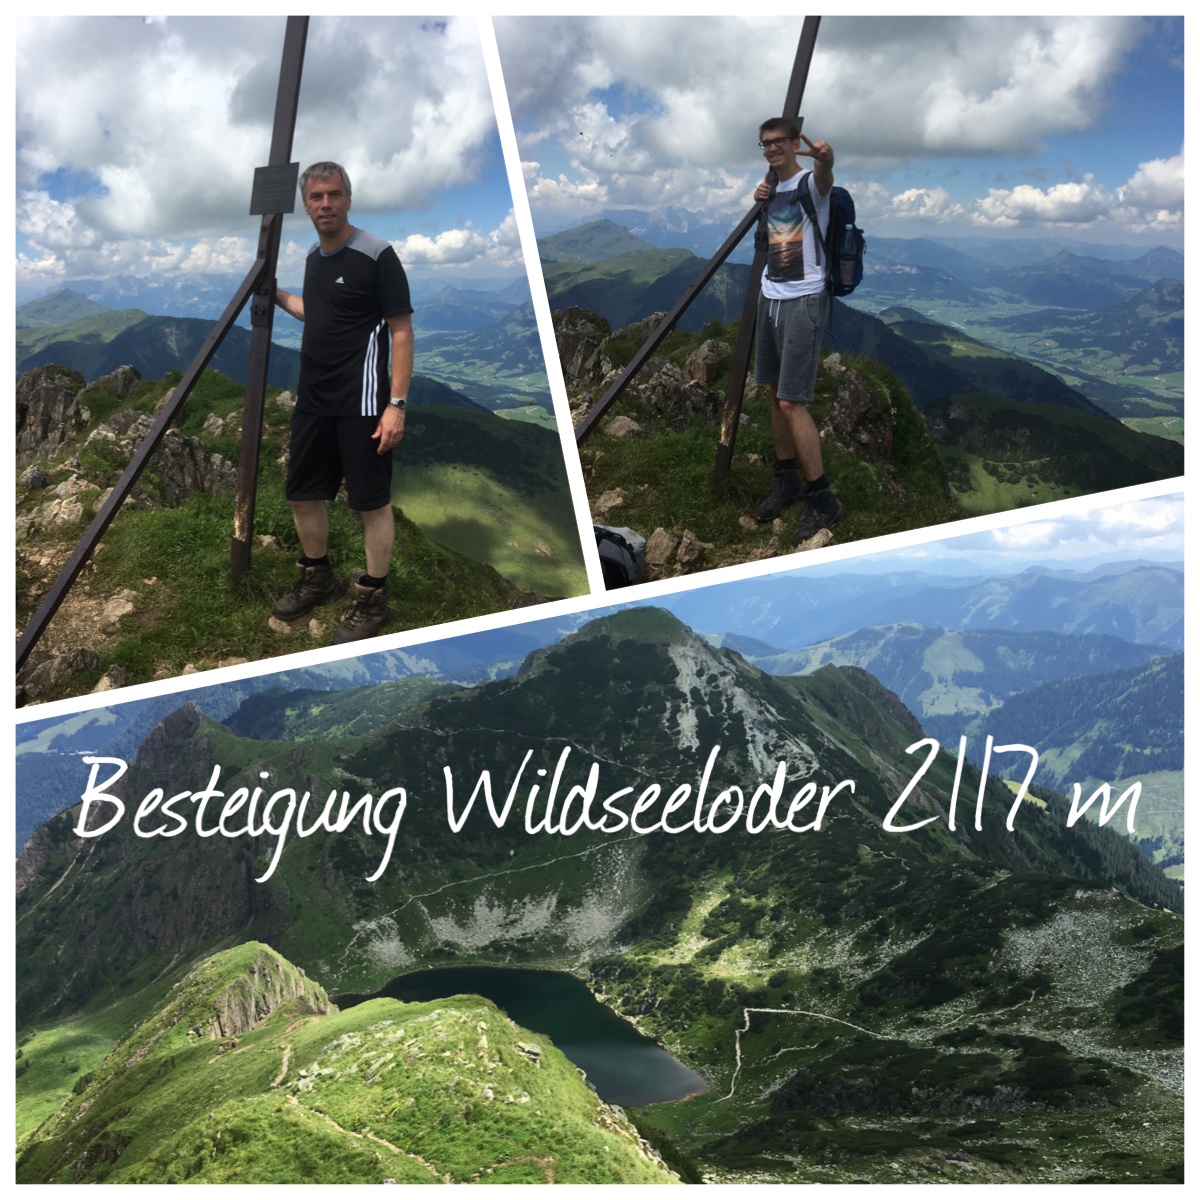 Speedersteigung Wildseeloder 2117 m